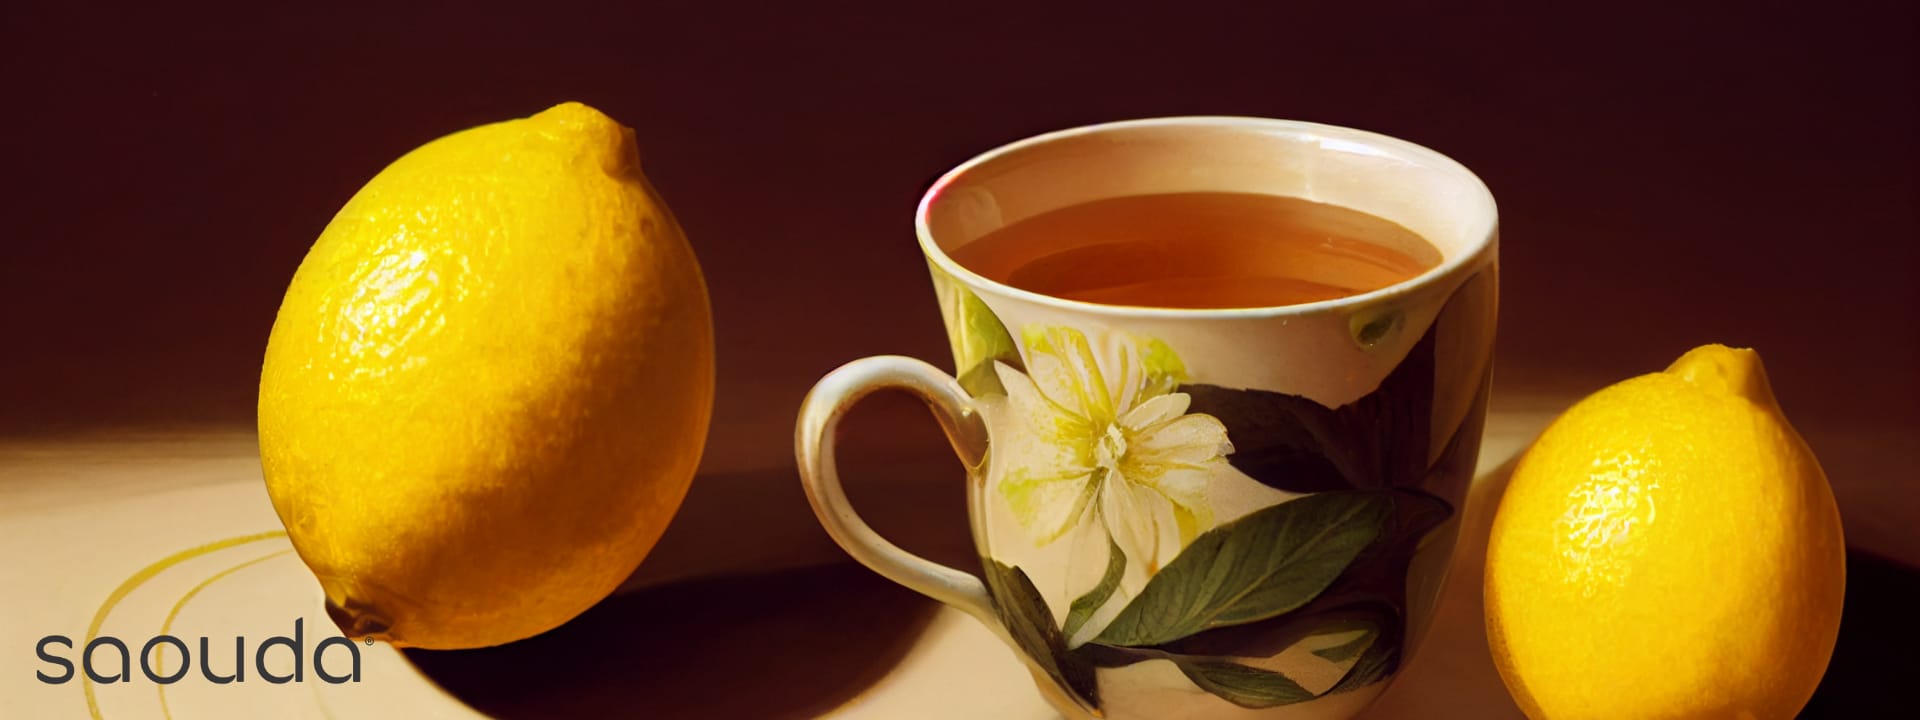 https://www.saouda.com/wp-content/uploads/2022/11/Combien-goutes-citron-the-miel.jpg